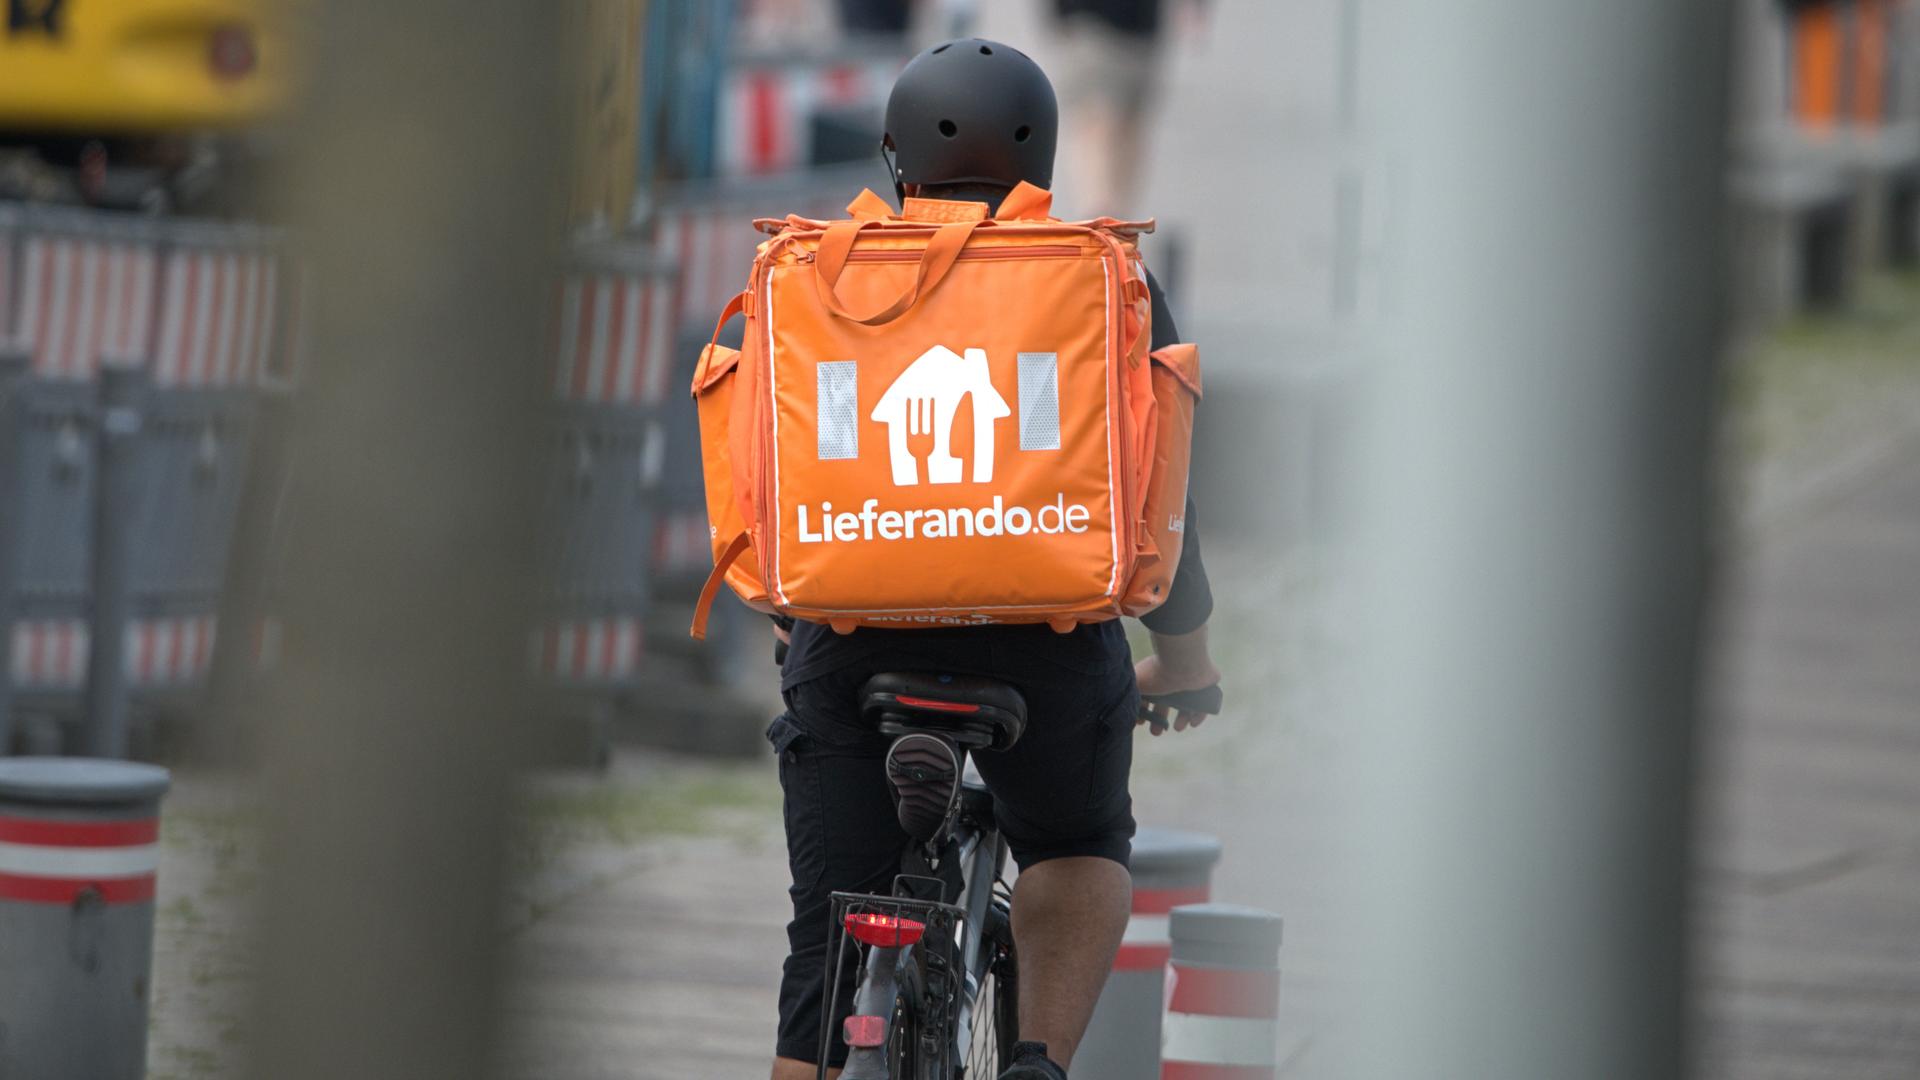 Ein Fahrradkurier des Fastfood-Lieferdienstes Lieferando.de mit Helm im Einsatz.